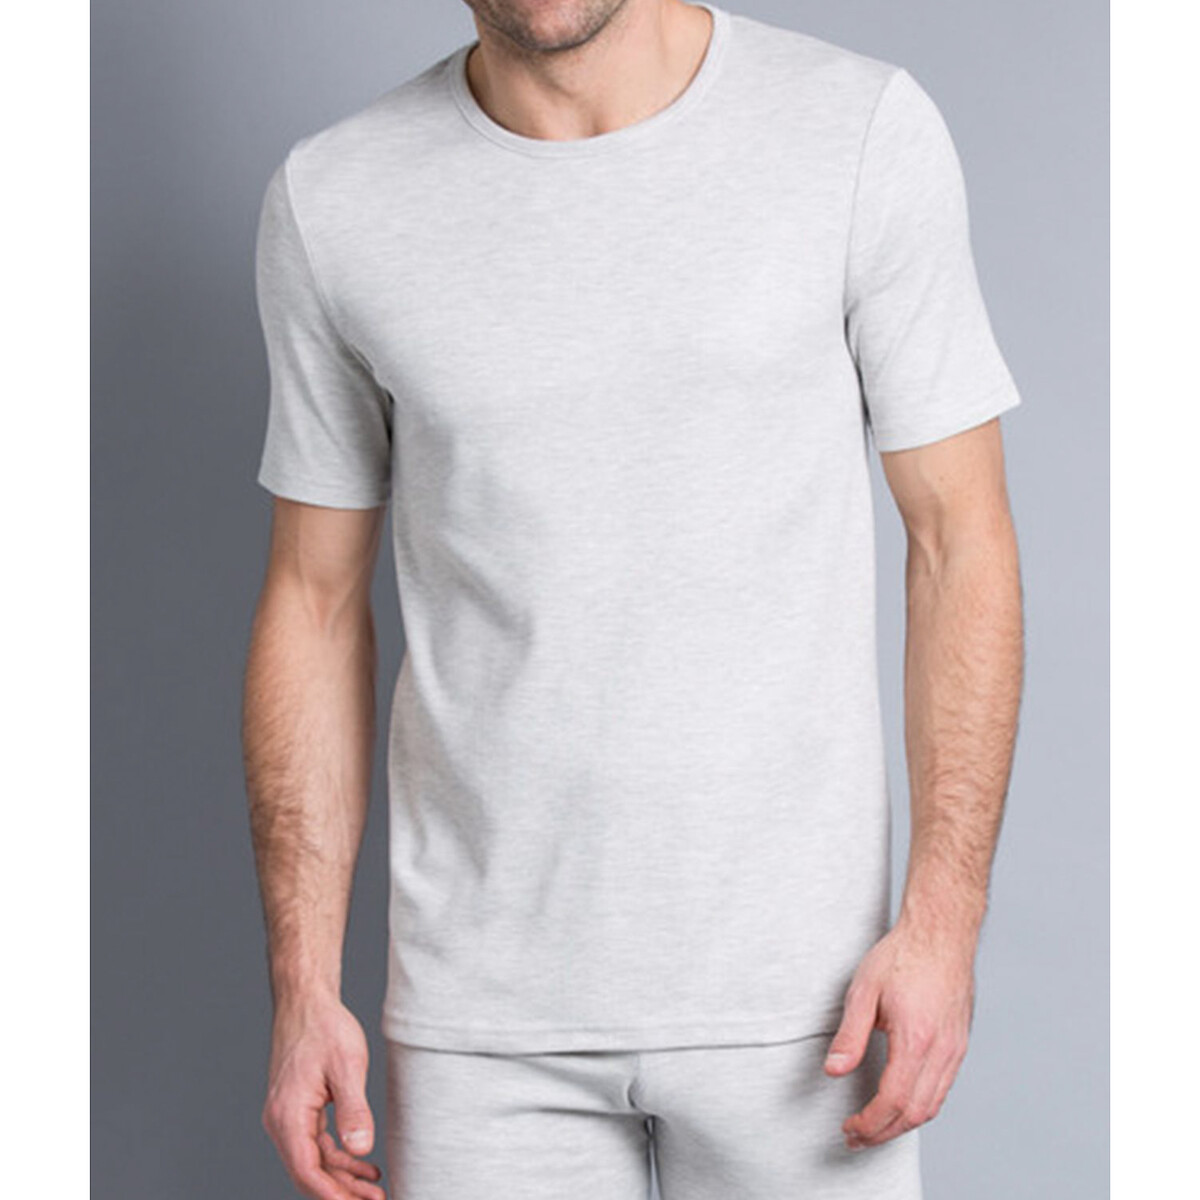 T-shirt manches courtes maille interlock, degré 3 gris chiné Damart